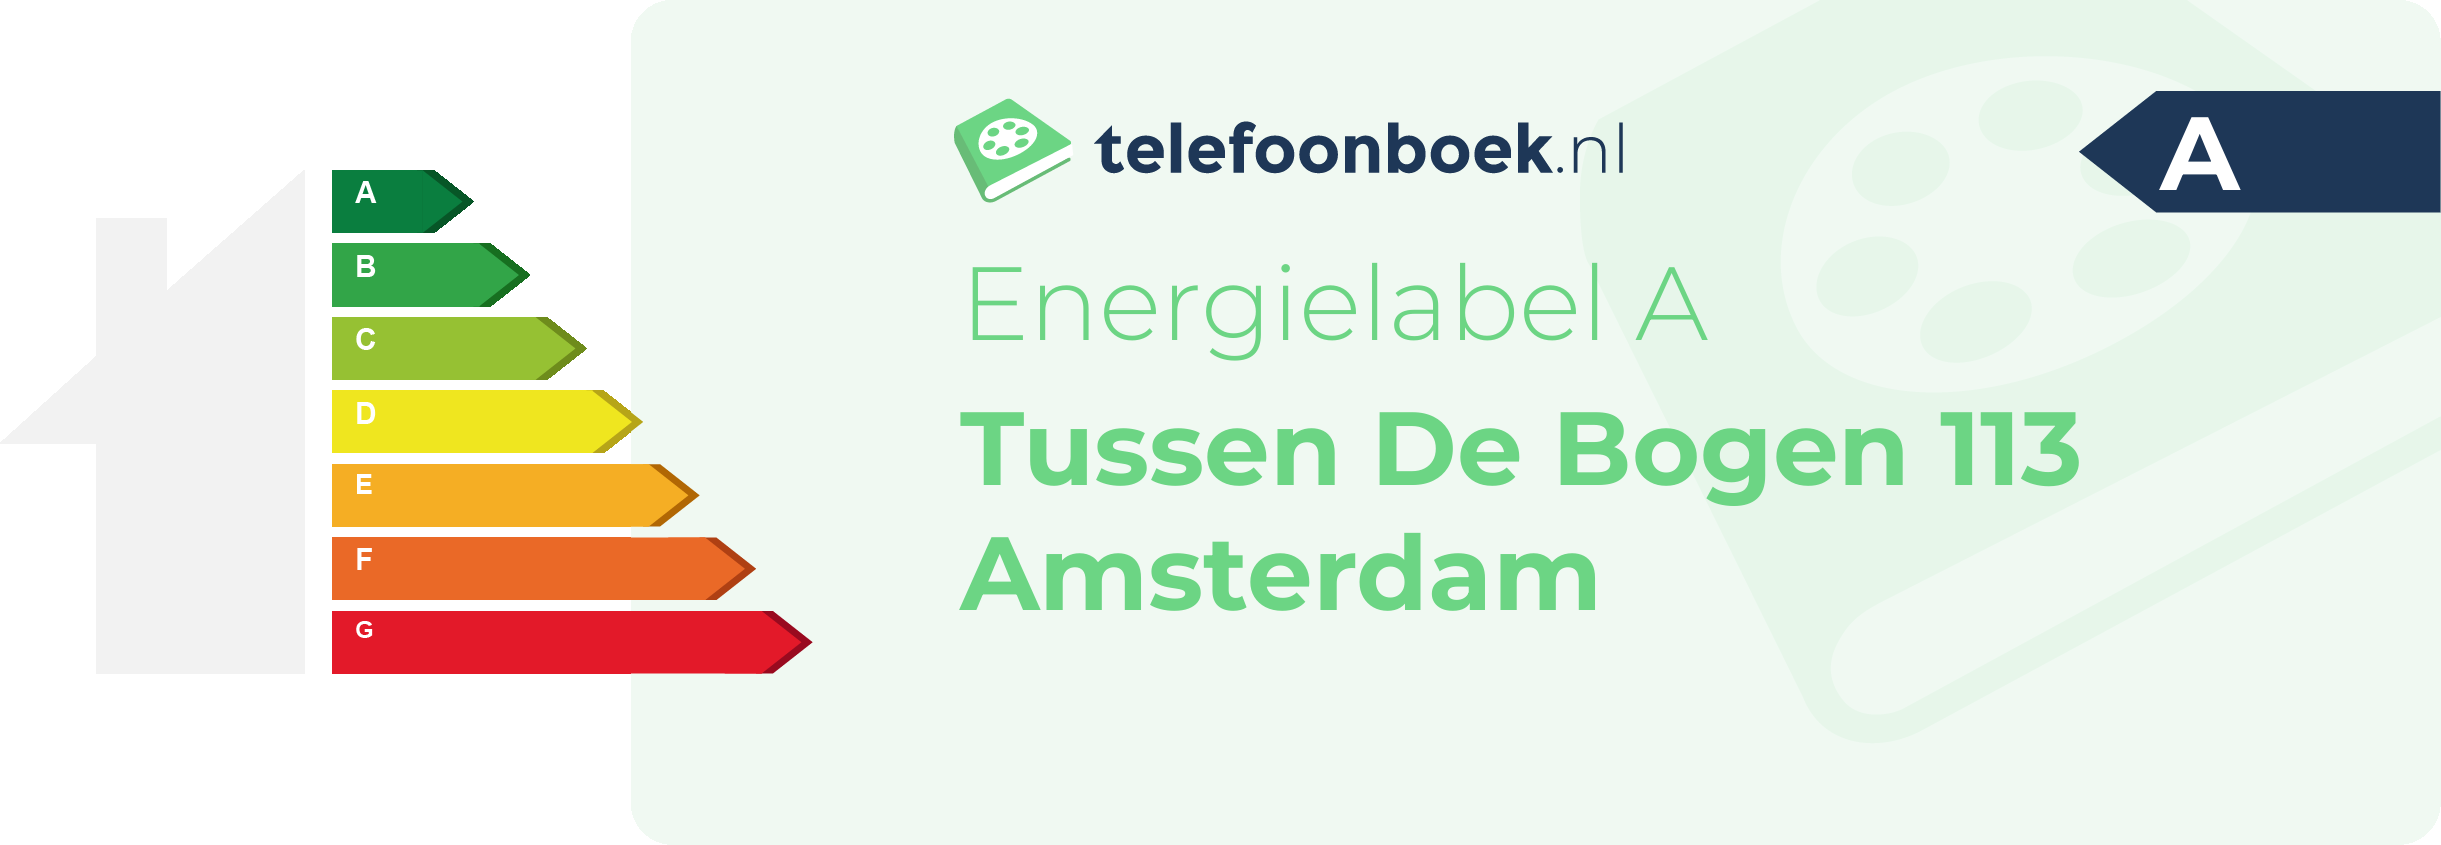 Energielabel Tussen De Bogen 113 Amsterdam